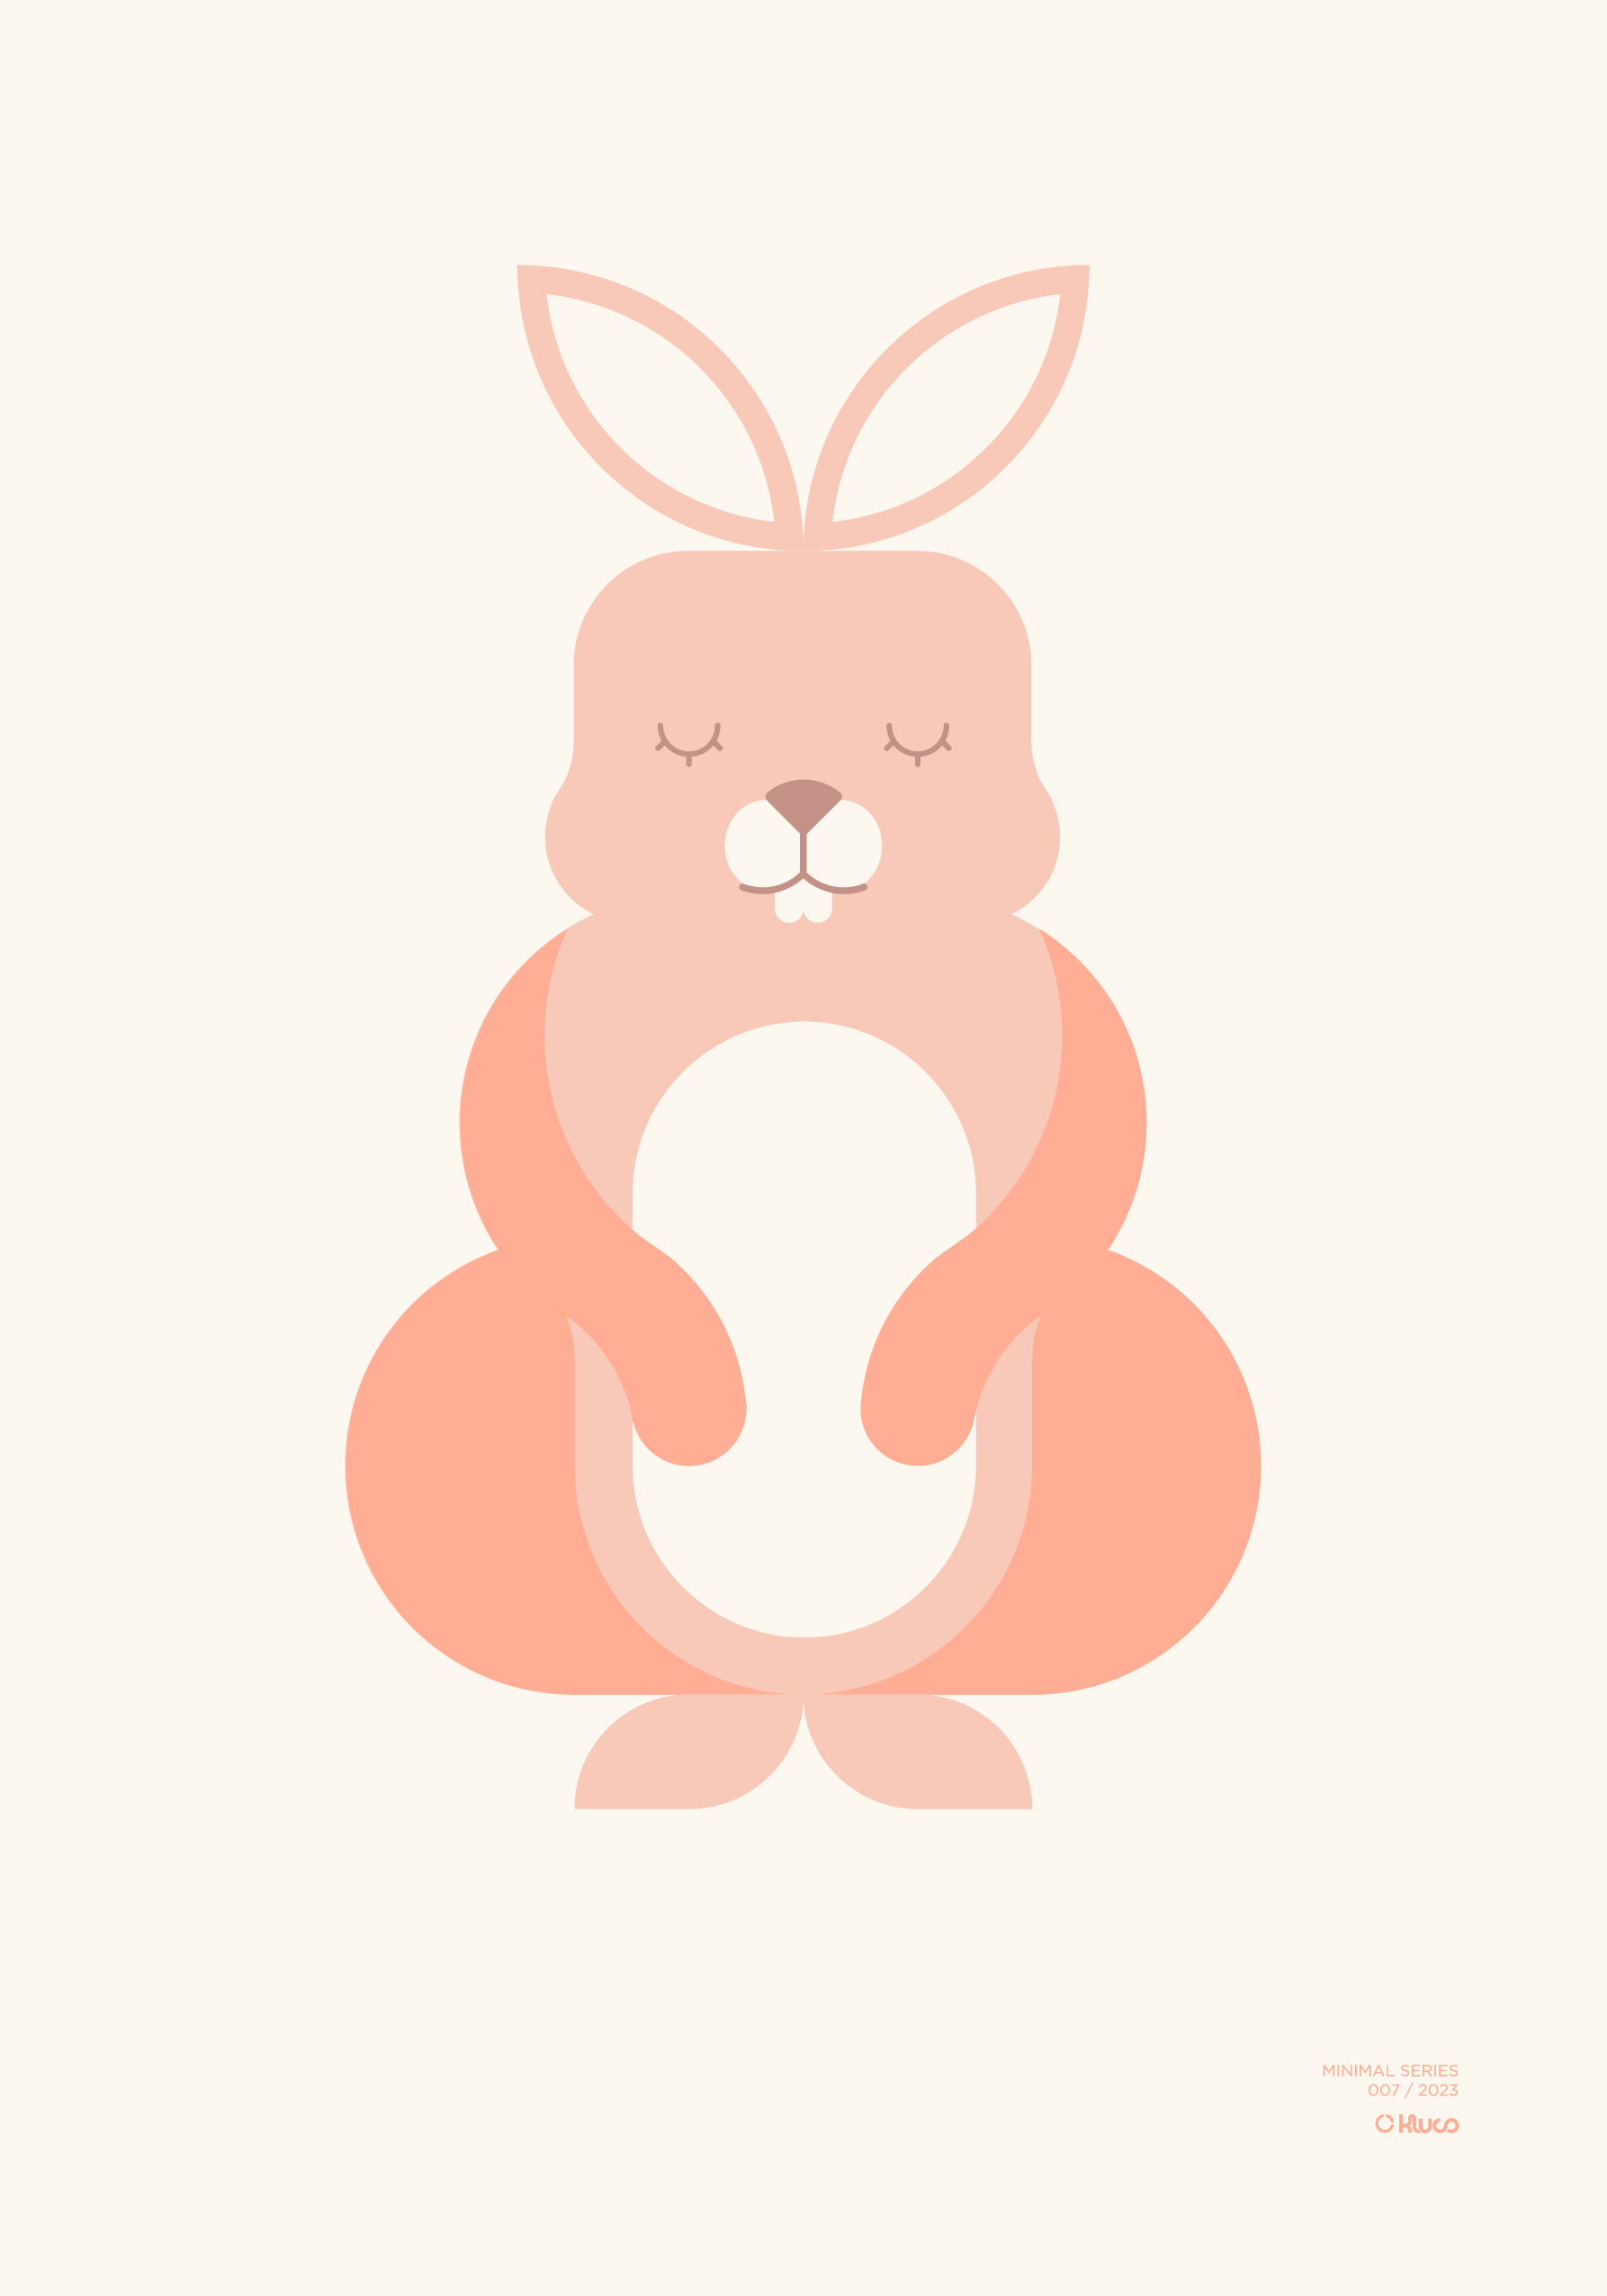 poster de conejo de estilo minimalista